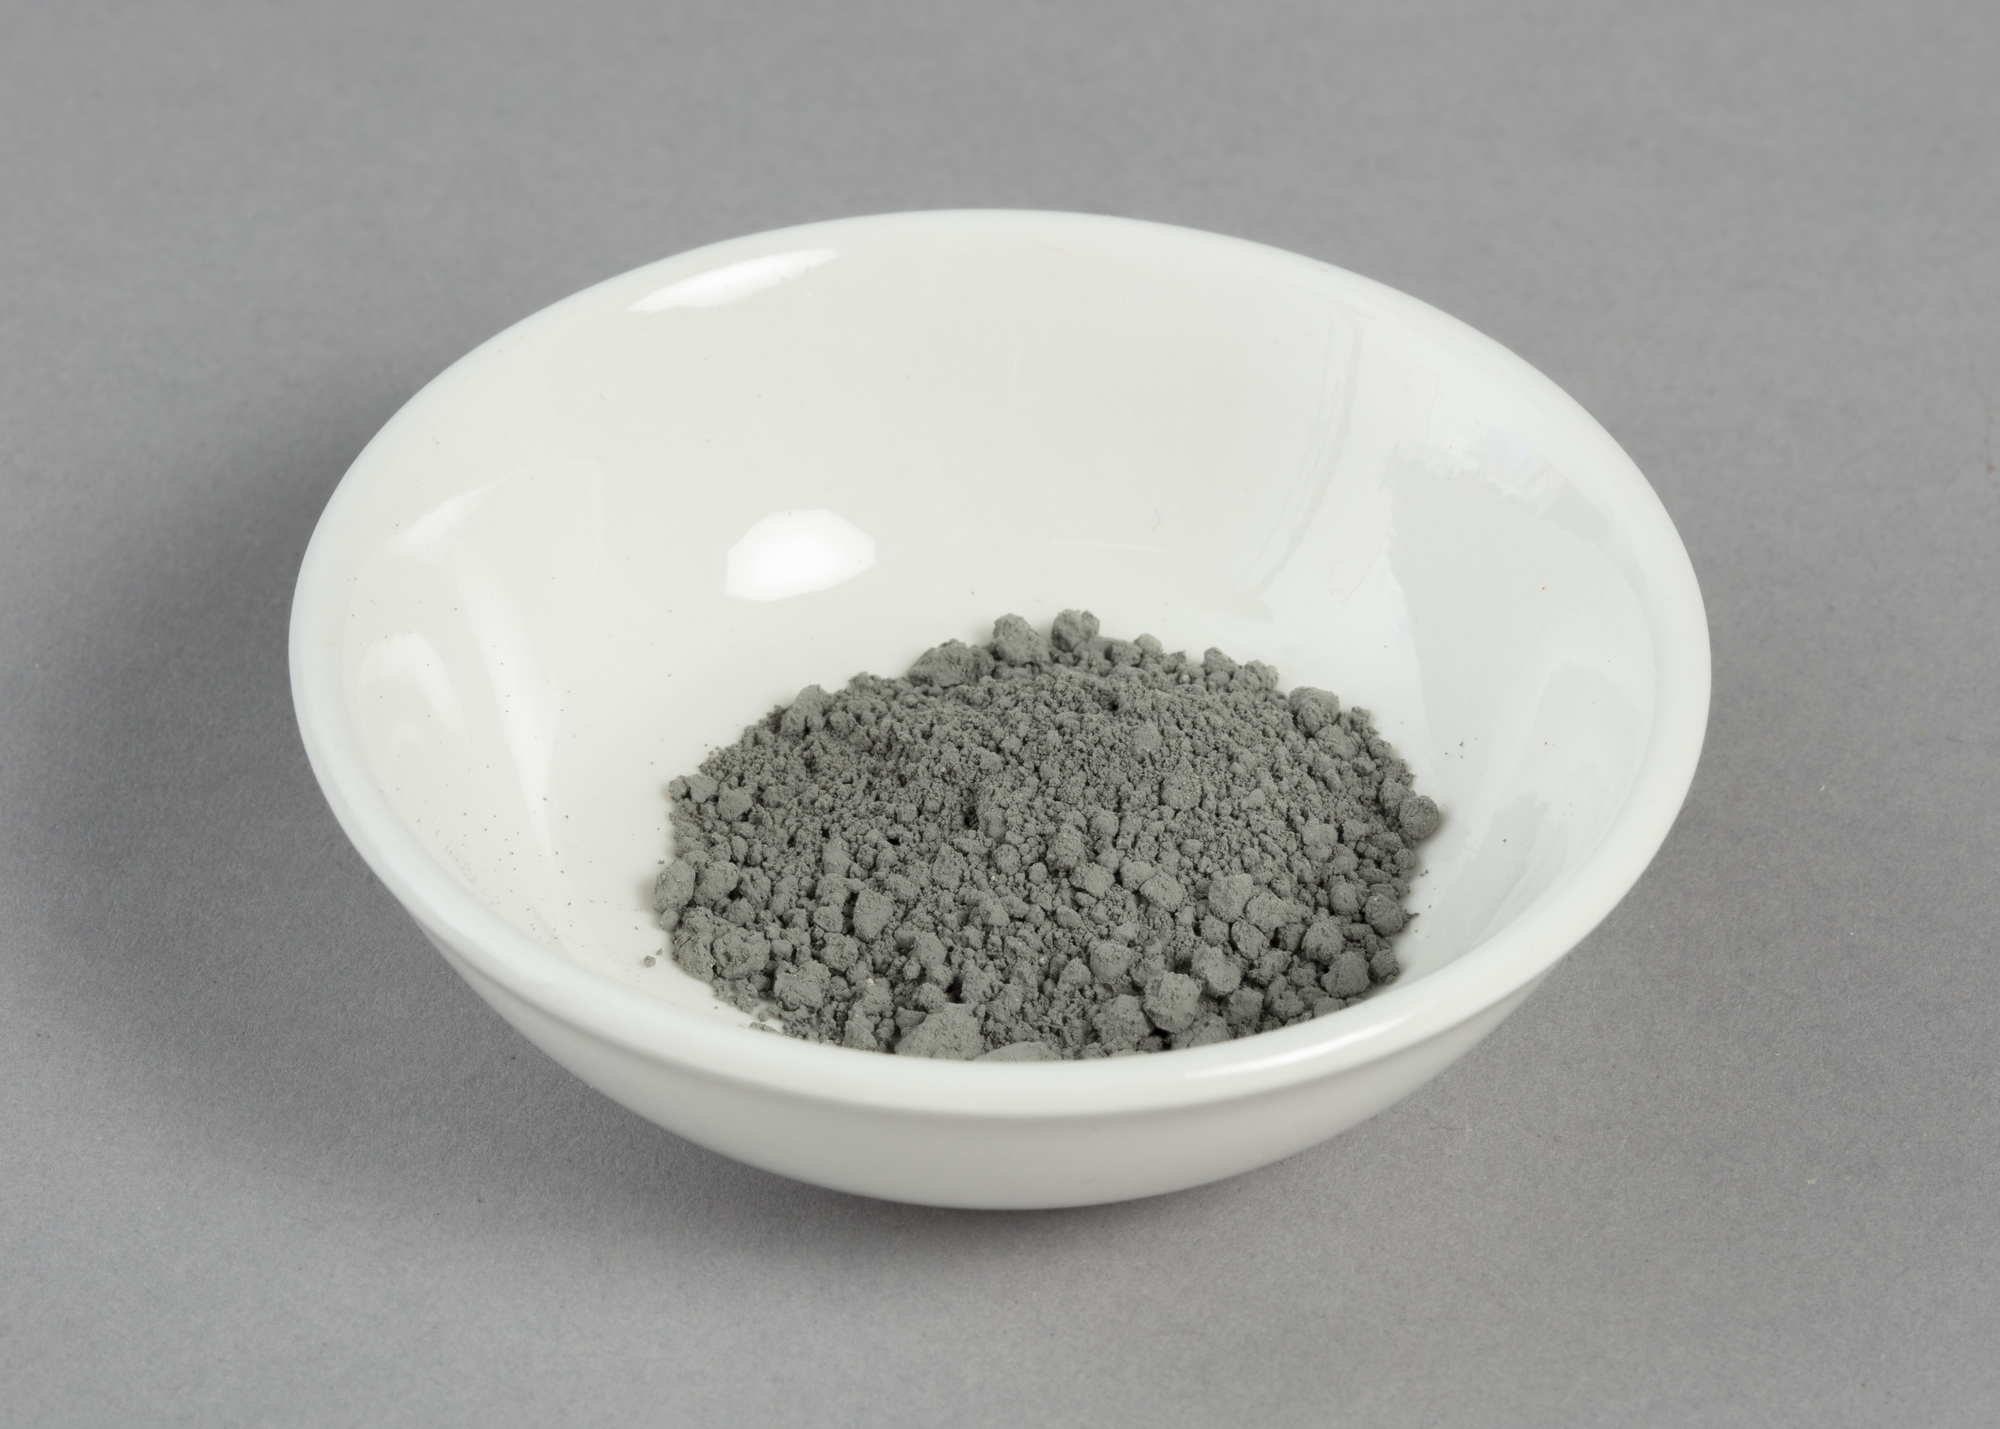 a bowl of grey-coloured cobalt oxide powder